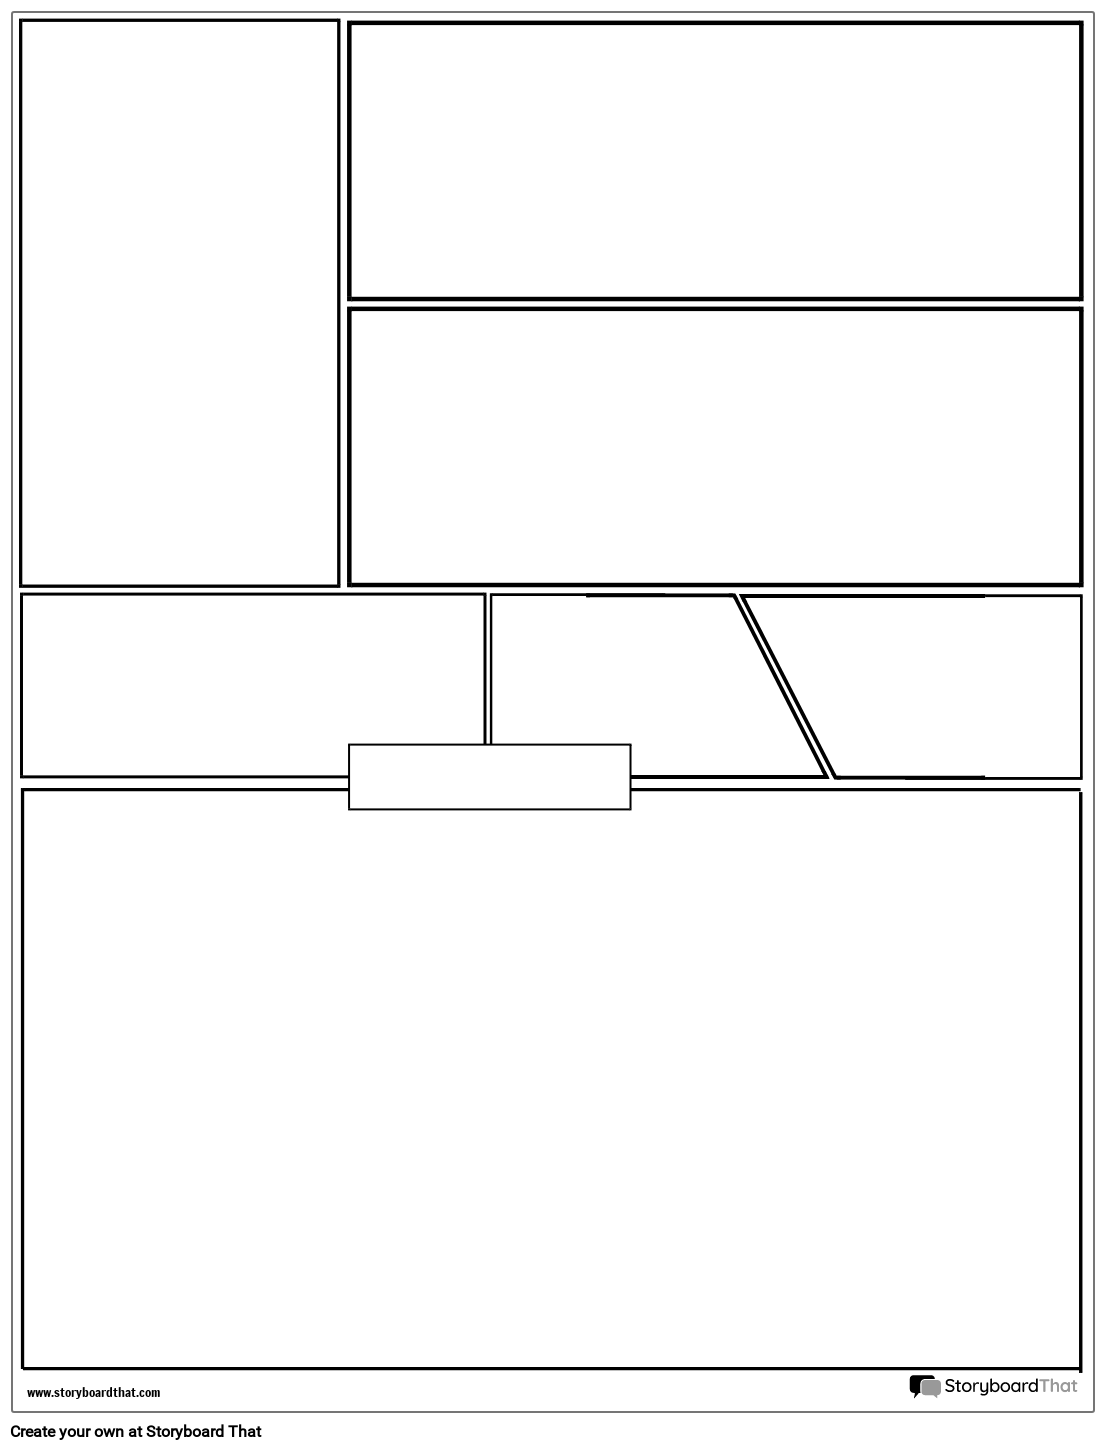 graphic-novel-layout-grid-med-stor-bundramme-storyboard